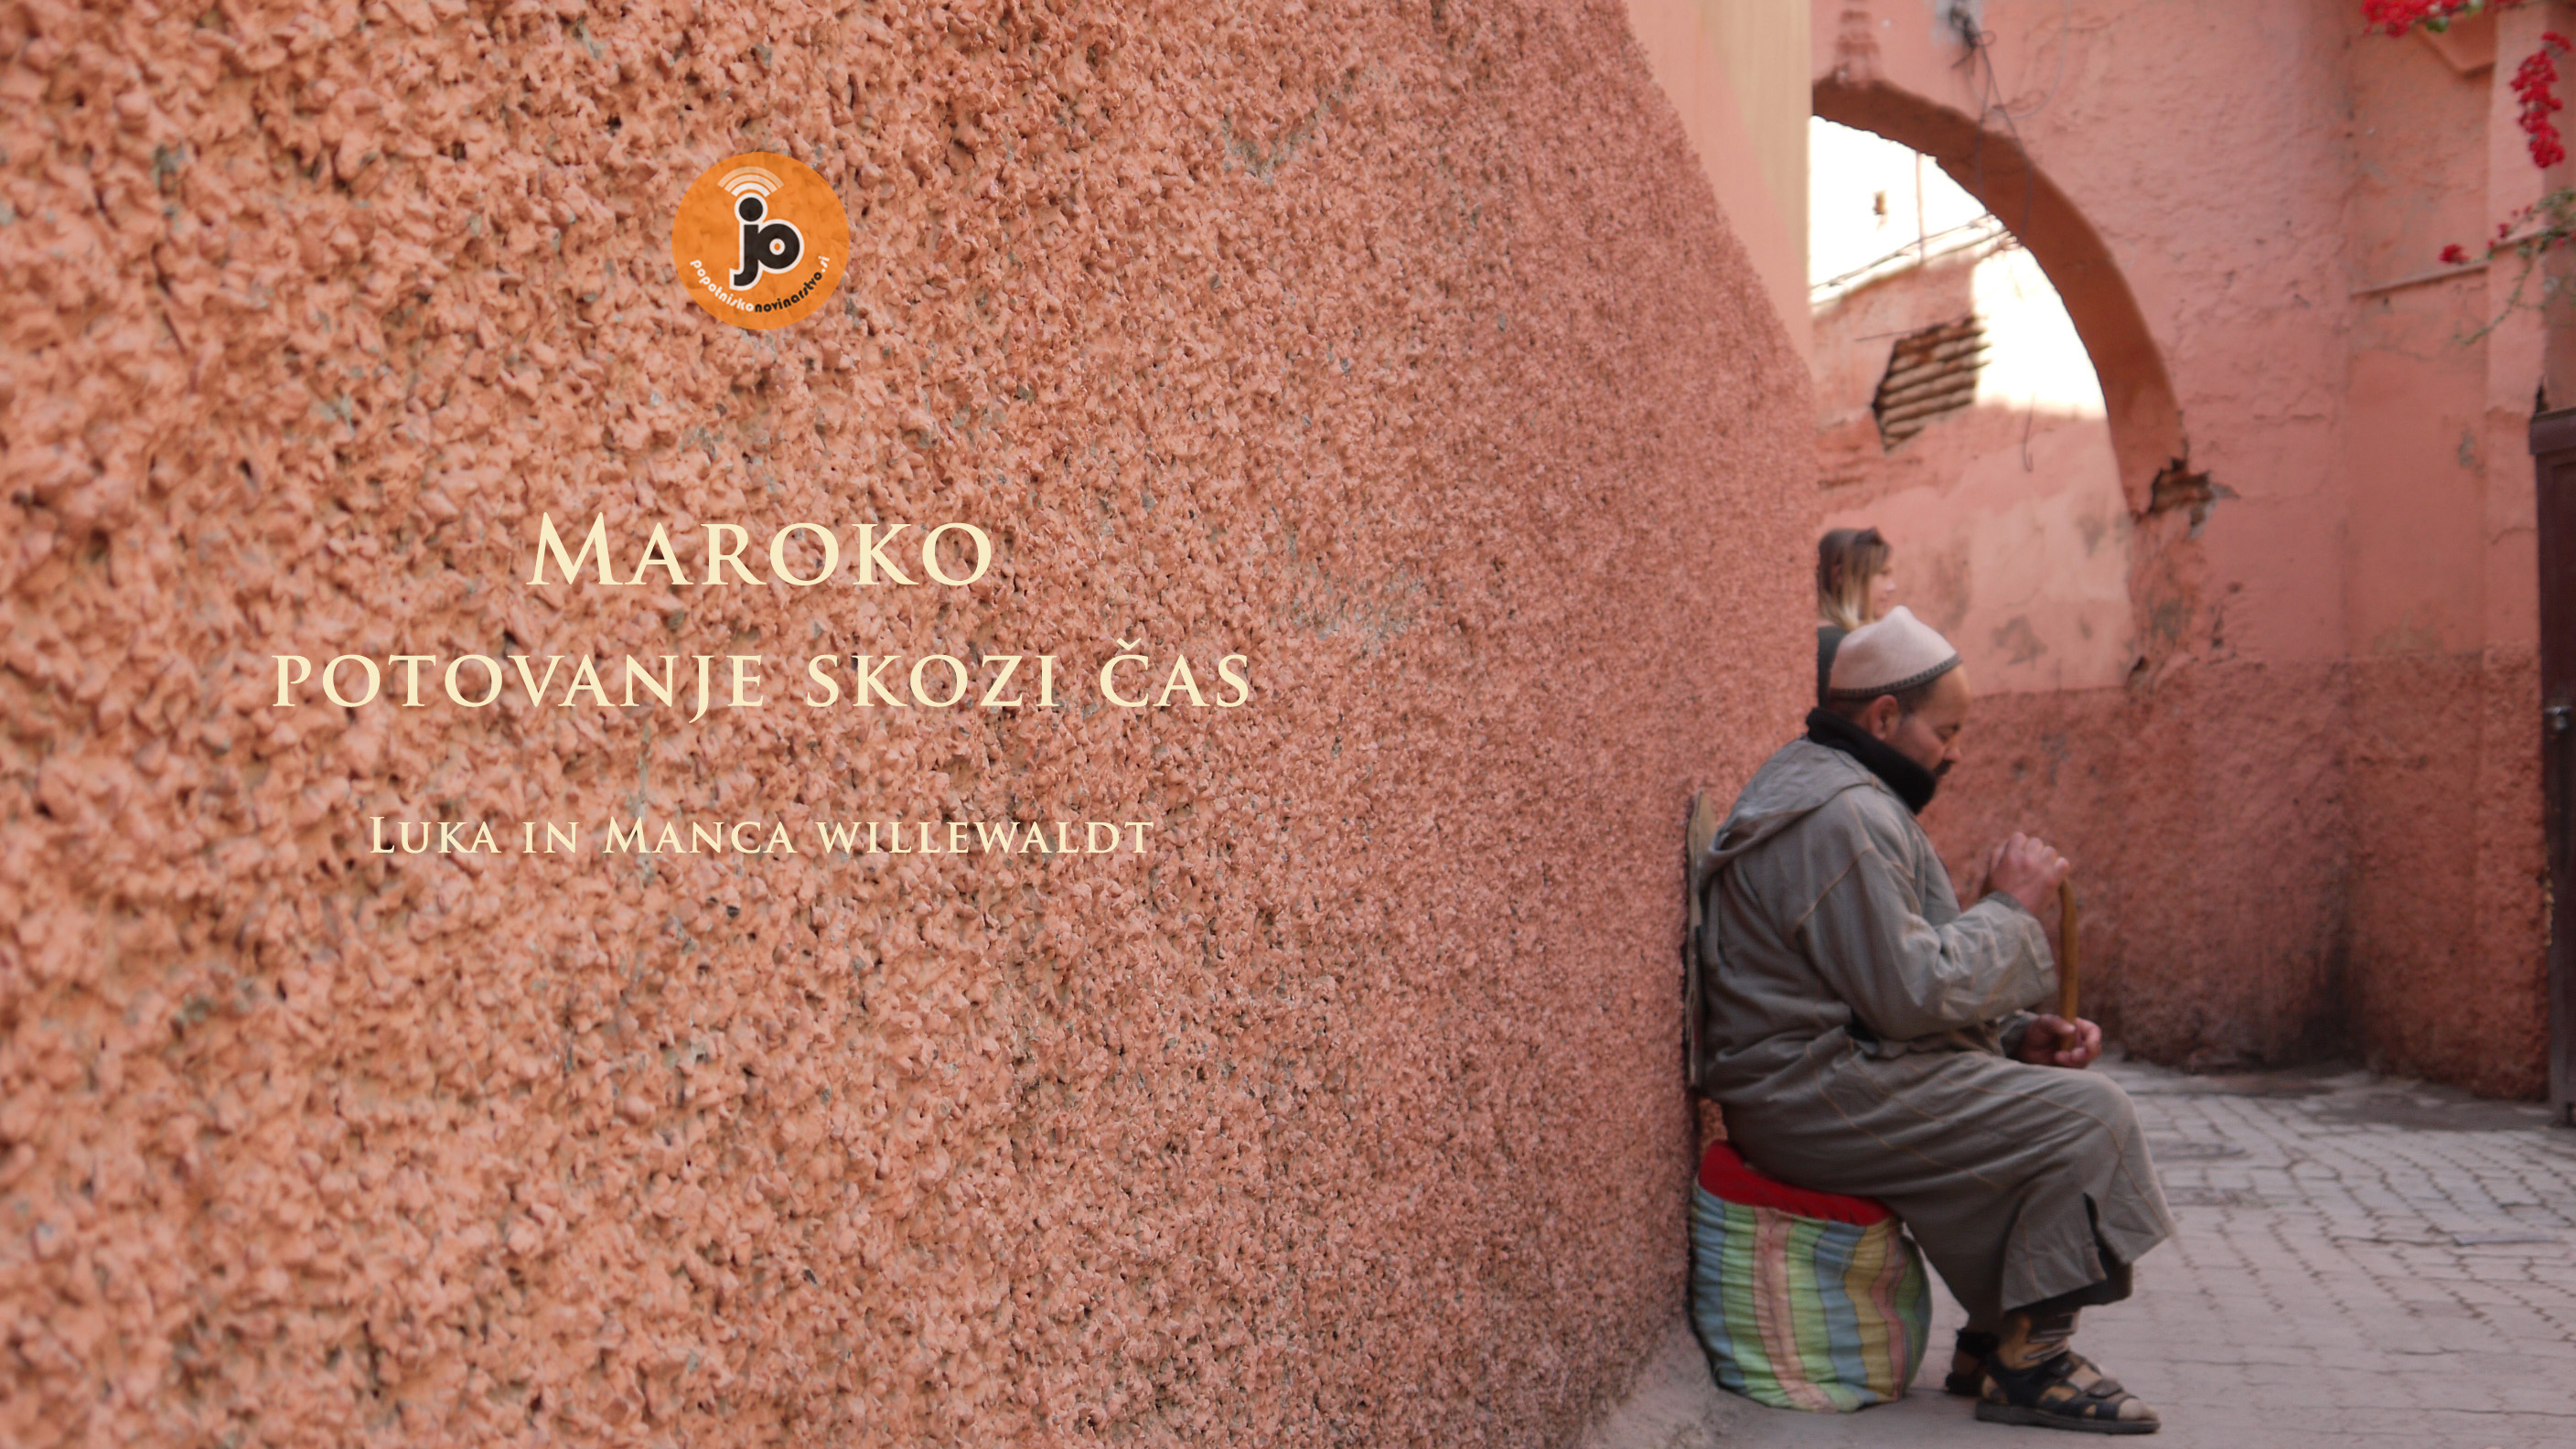 Popotniško novinarstvo: Maroko - potovanje skozi čas